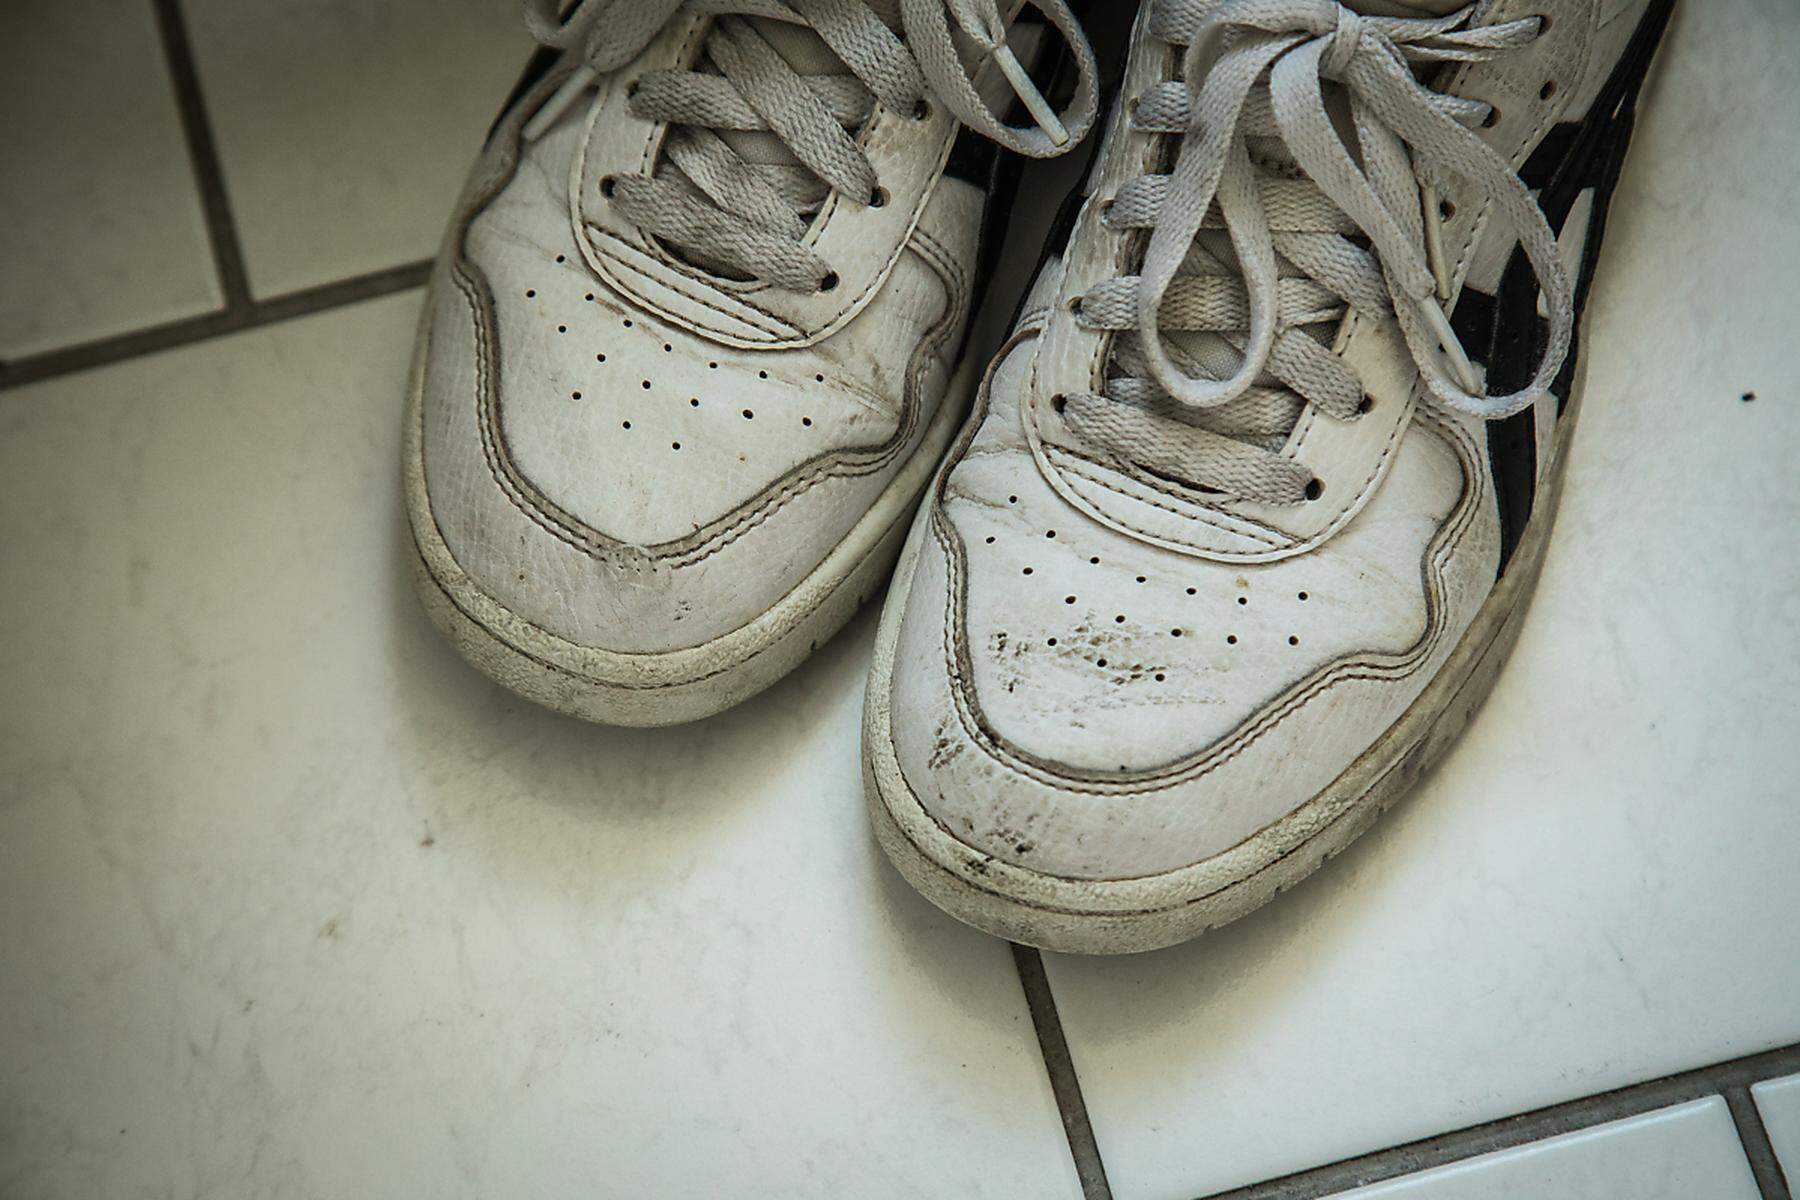 Schmutzige Sneaker reinigen mit Zahnpasta, Backpulver und Spülmittel